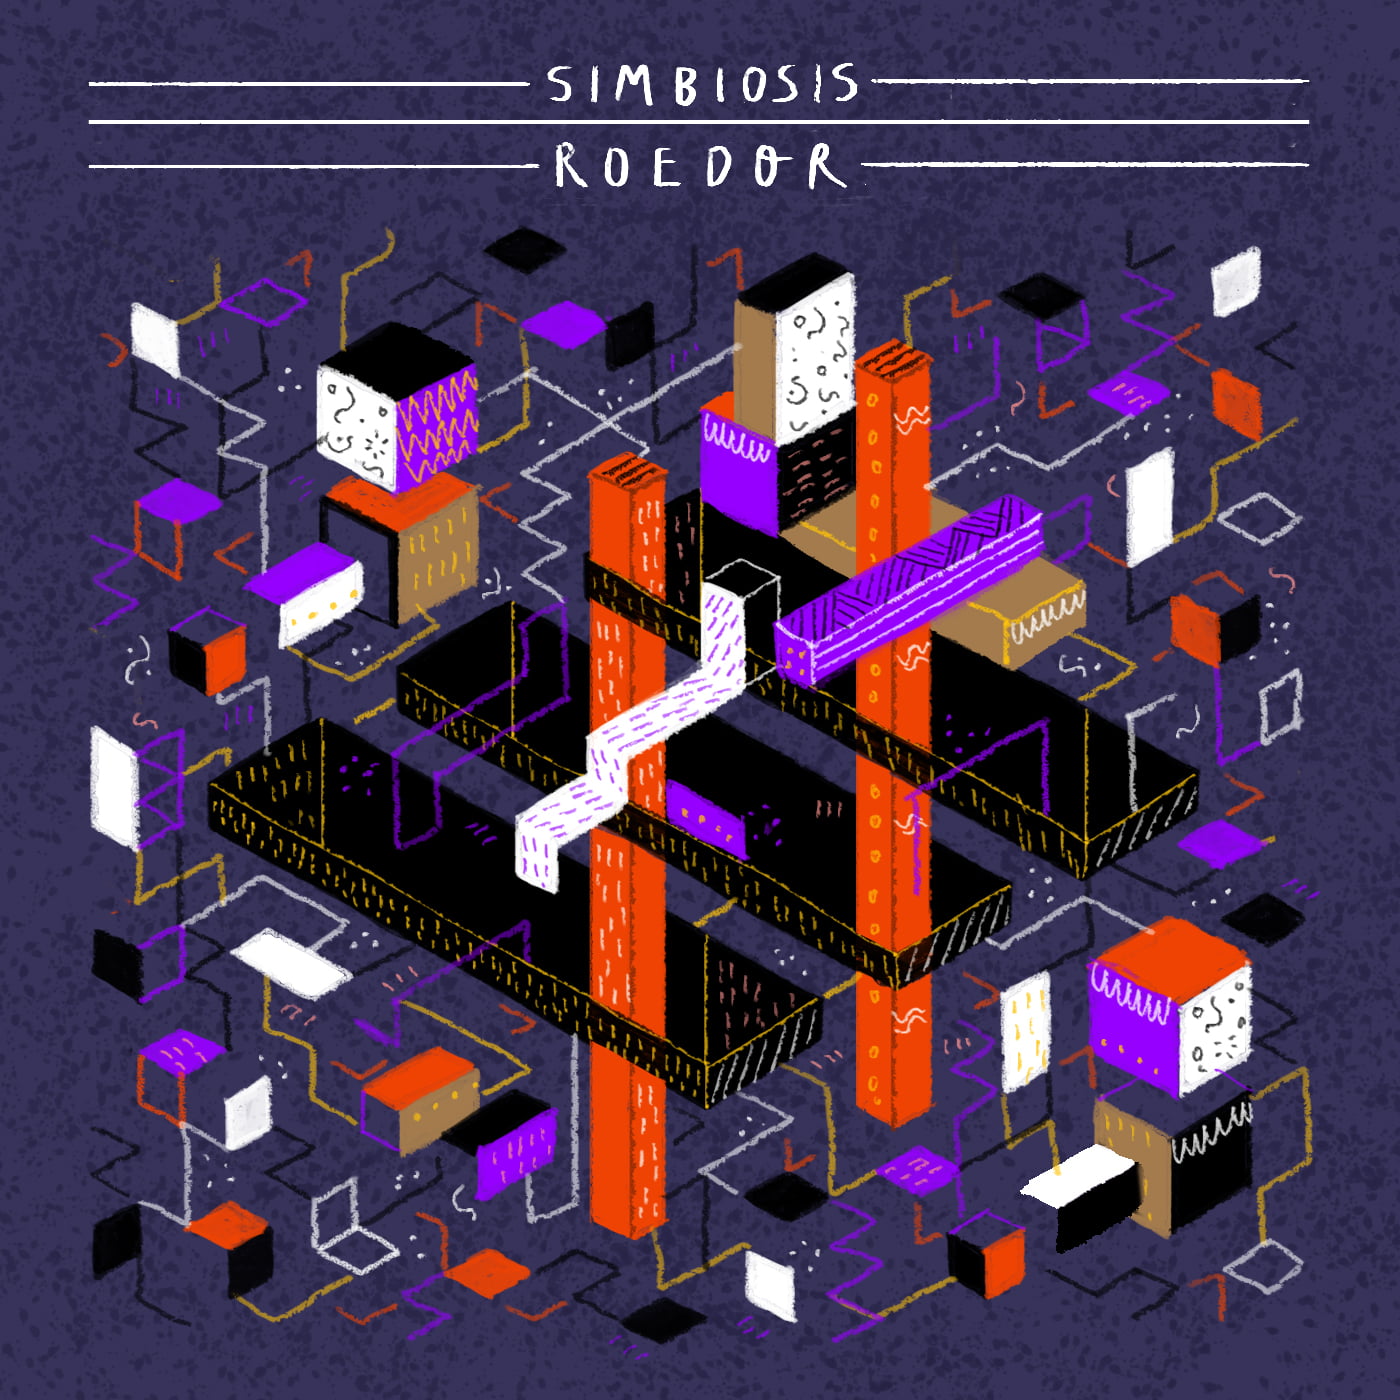 Nuevo lanzamiento en Monofonicos: [MNE 009] Roedor - Simbiosis